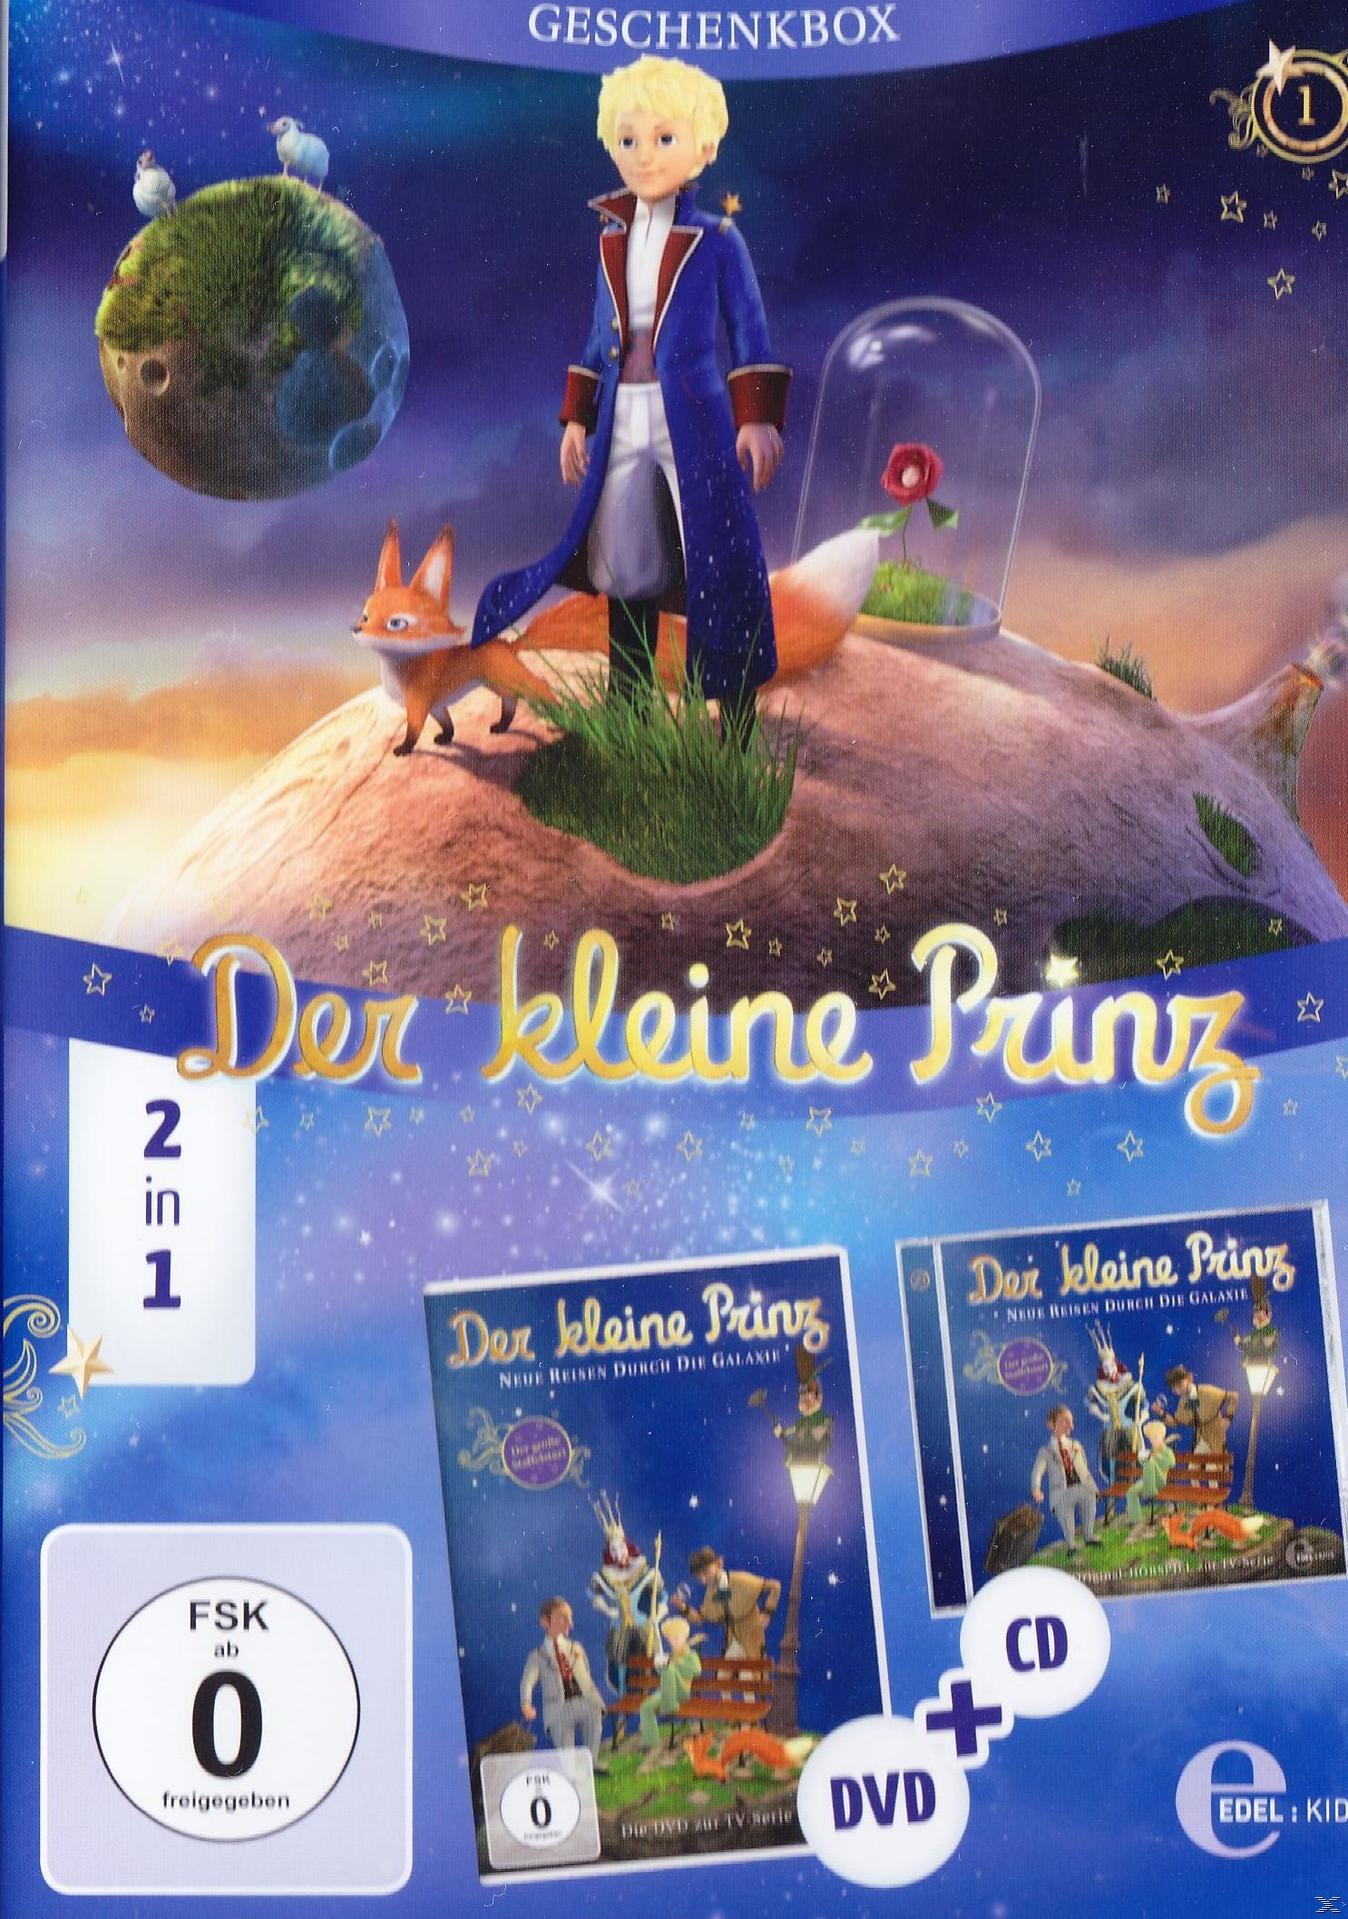 + Geschenkbox) kleine 2in1 Der (Exklusive - Galaxie Reisen CD Neue Prinz durch die DVD